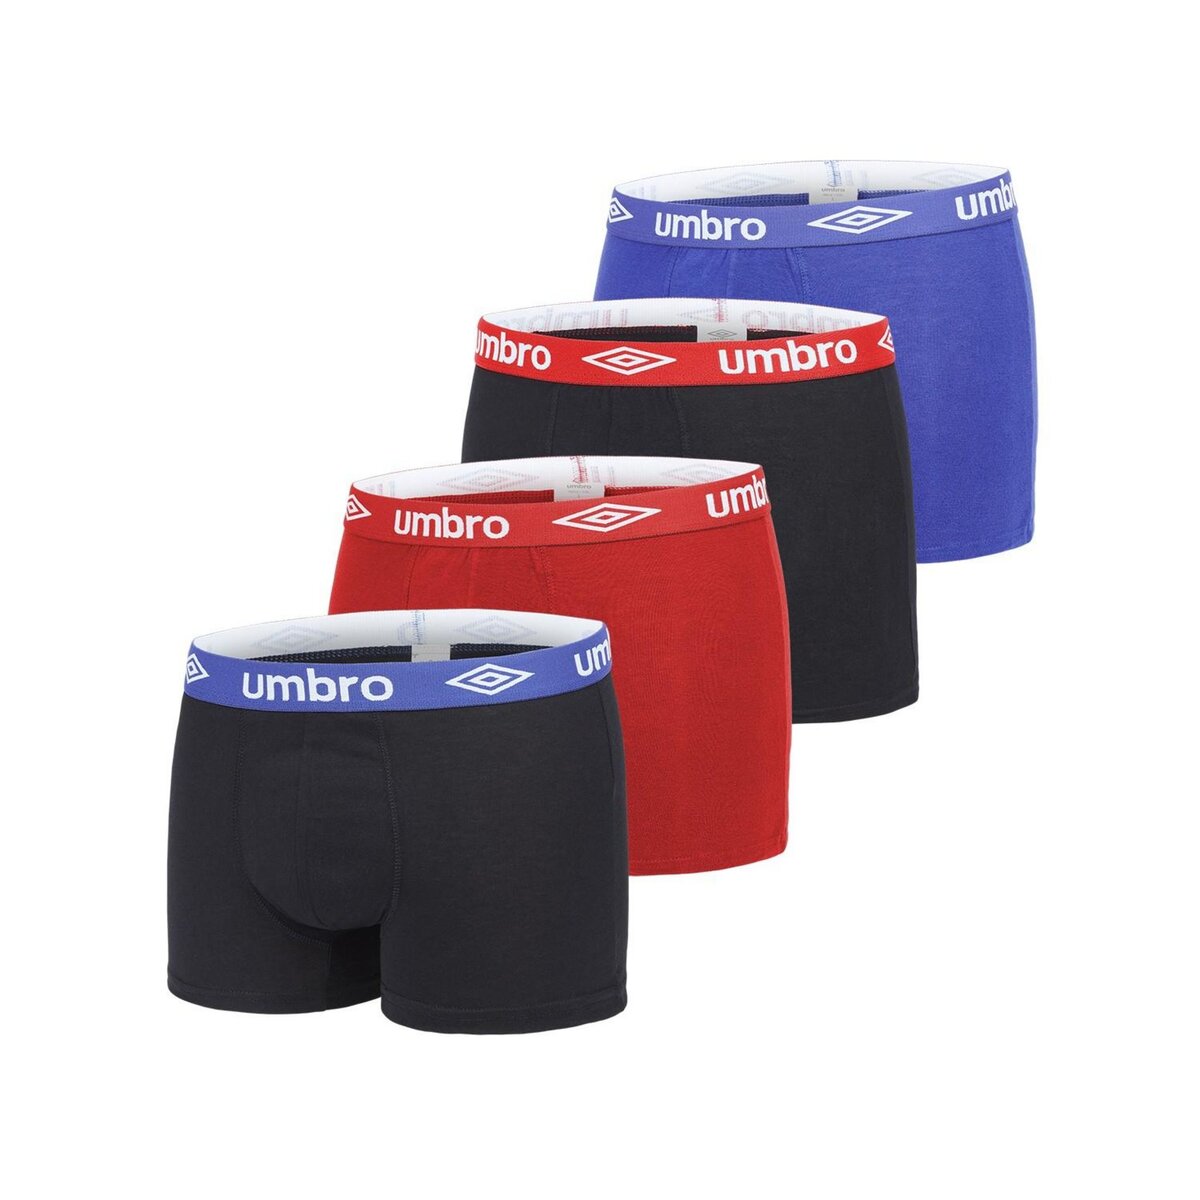 UMBRO Lot de 4 Boxers coton homme uni ceinture colorées